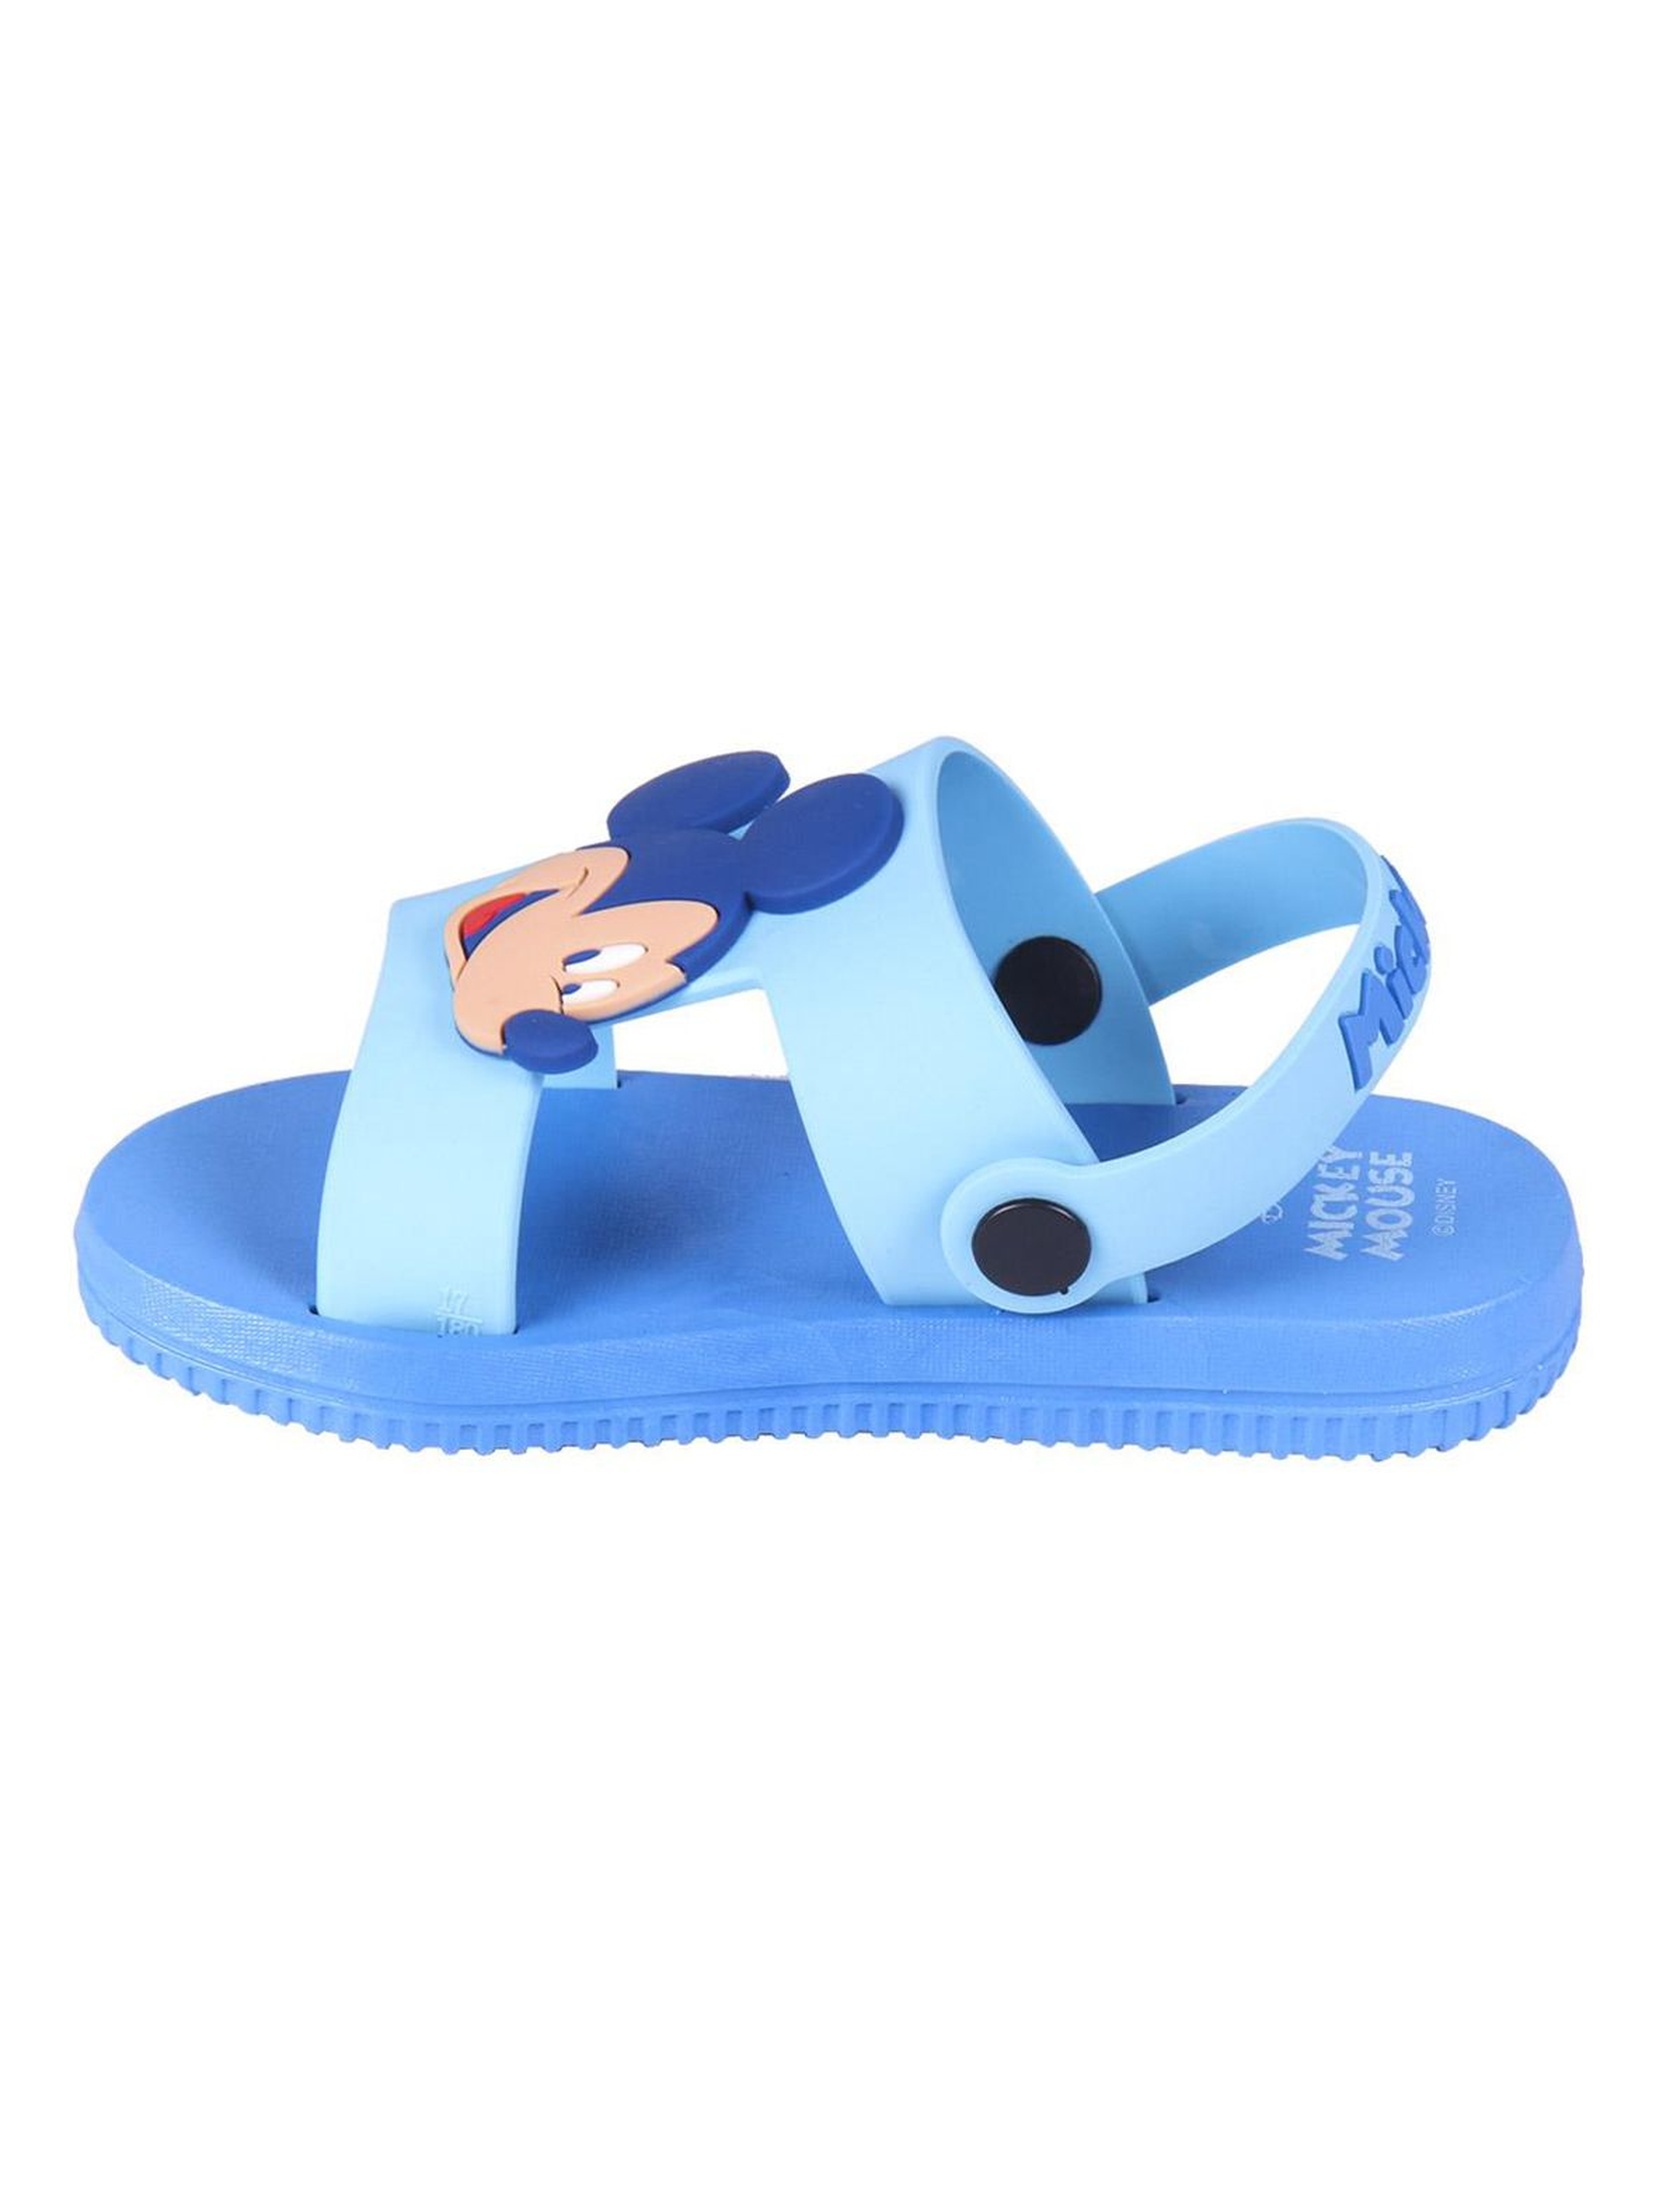 Sandały chłopięce Myszka Mickey - niebieskie